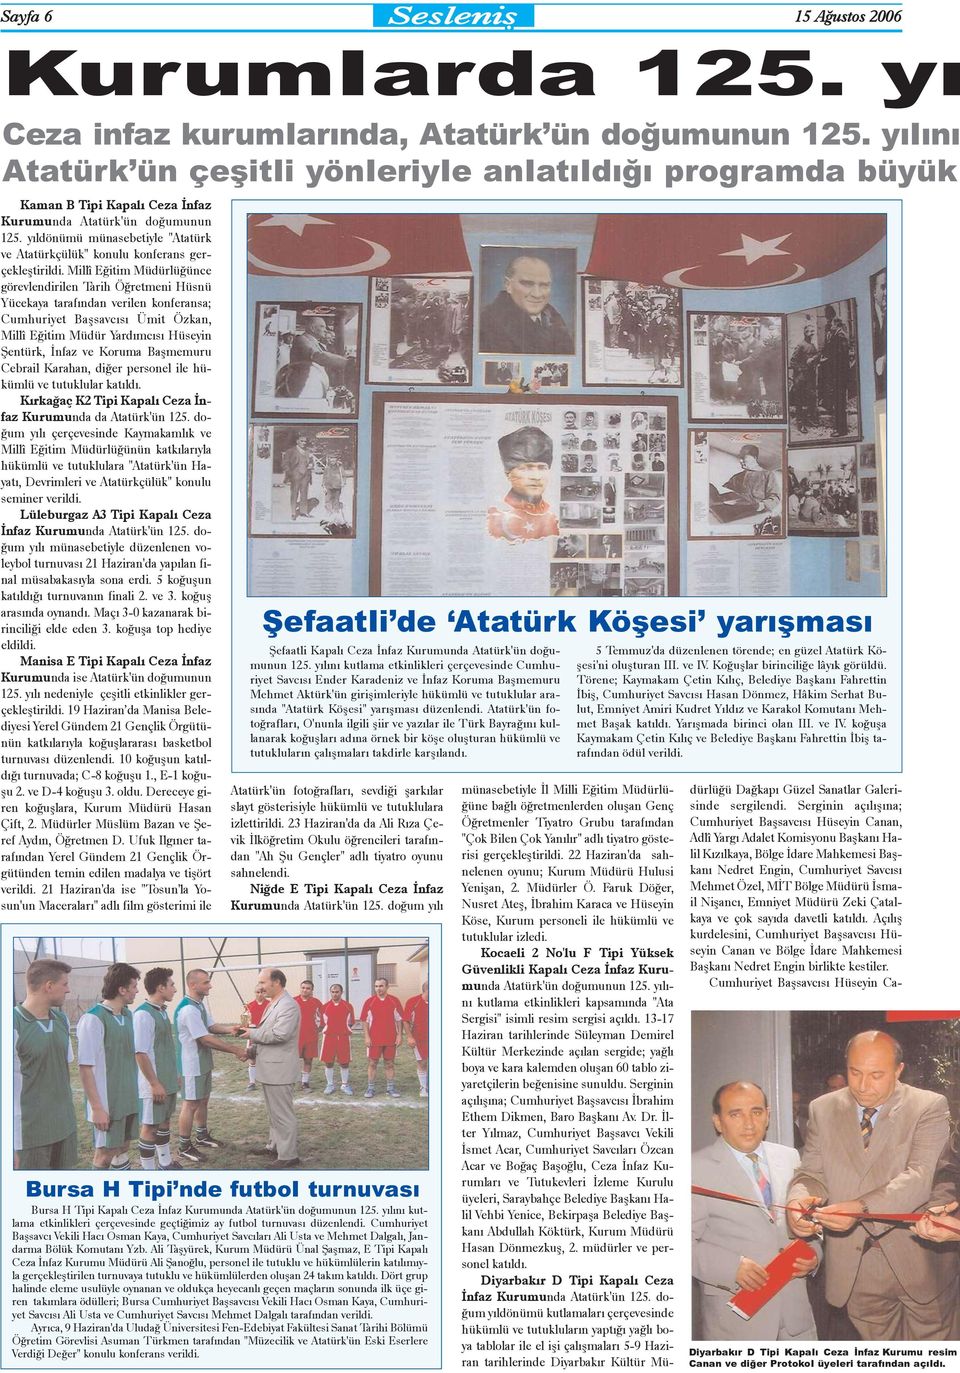 yýldönümü münasebetiyle "Atatürk ve Atatürkçülük" konulu konferans gerçekleþtirildi.